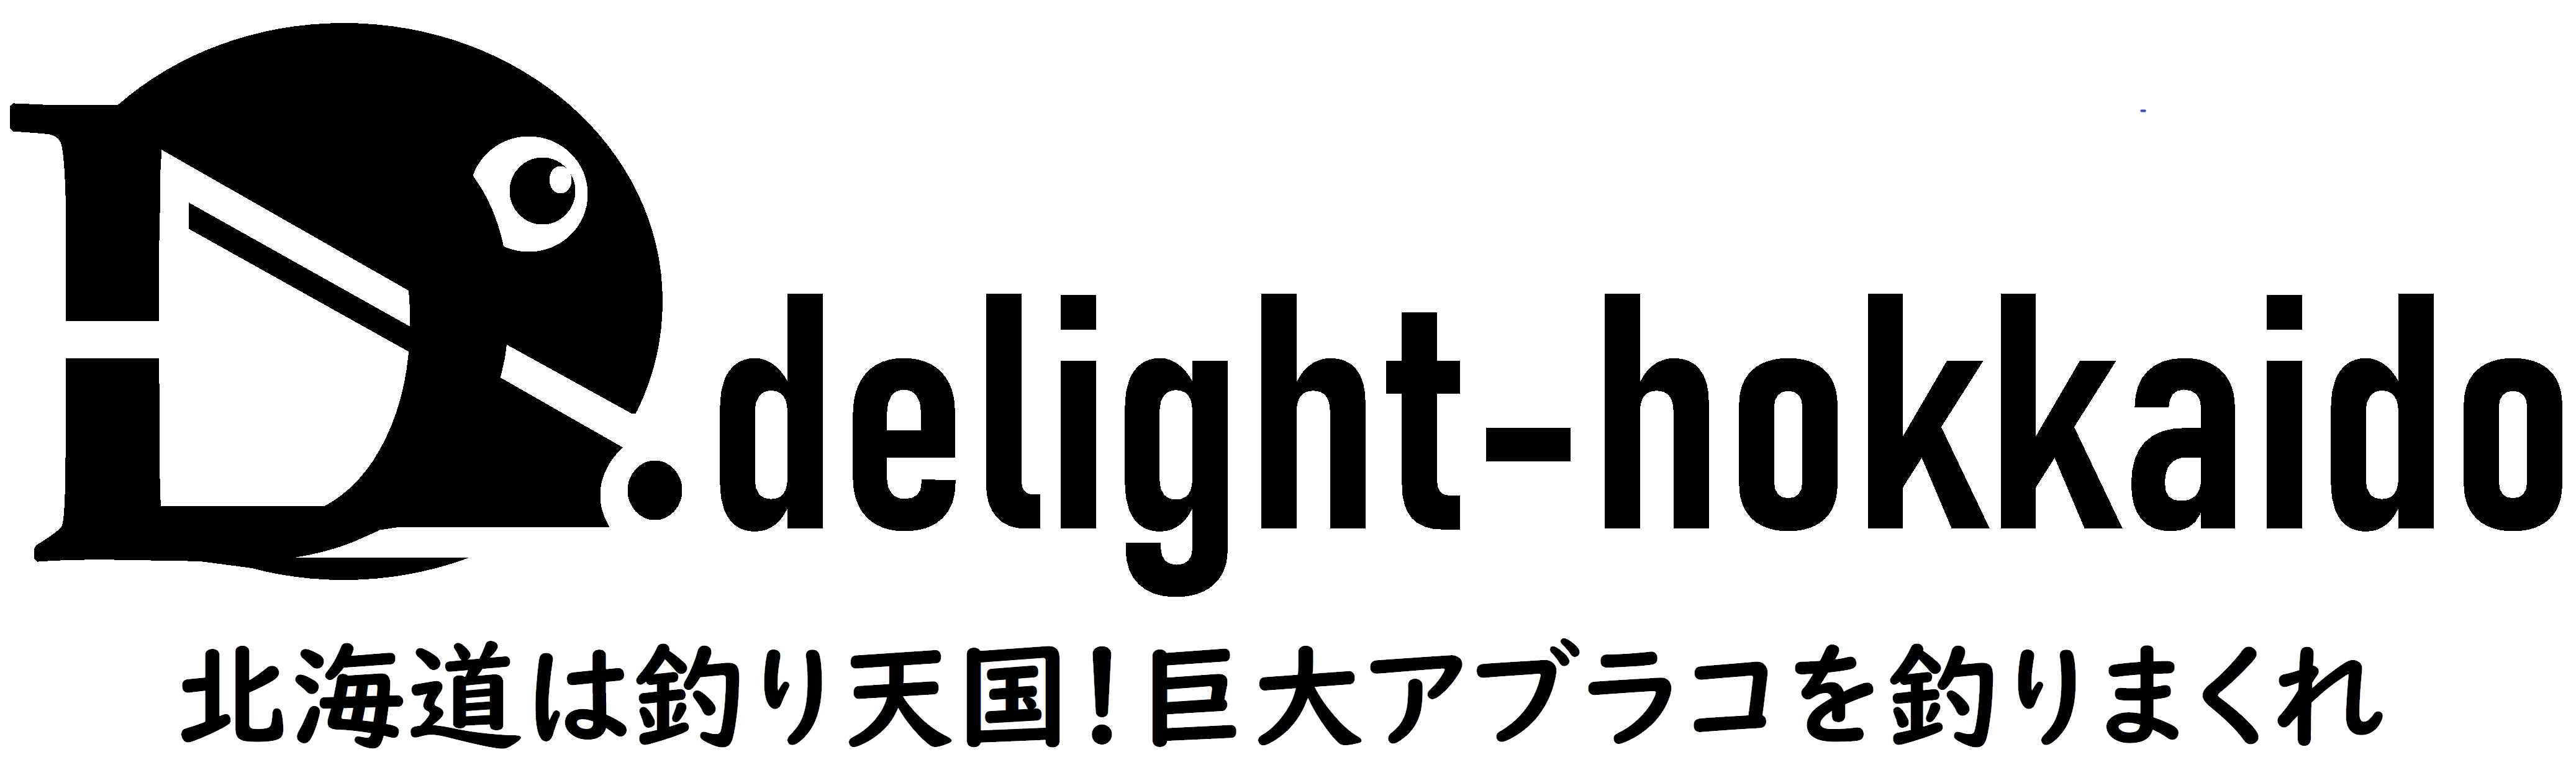 delight-hokkaido